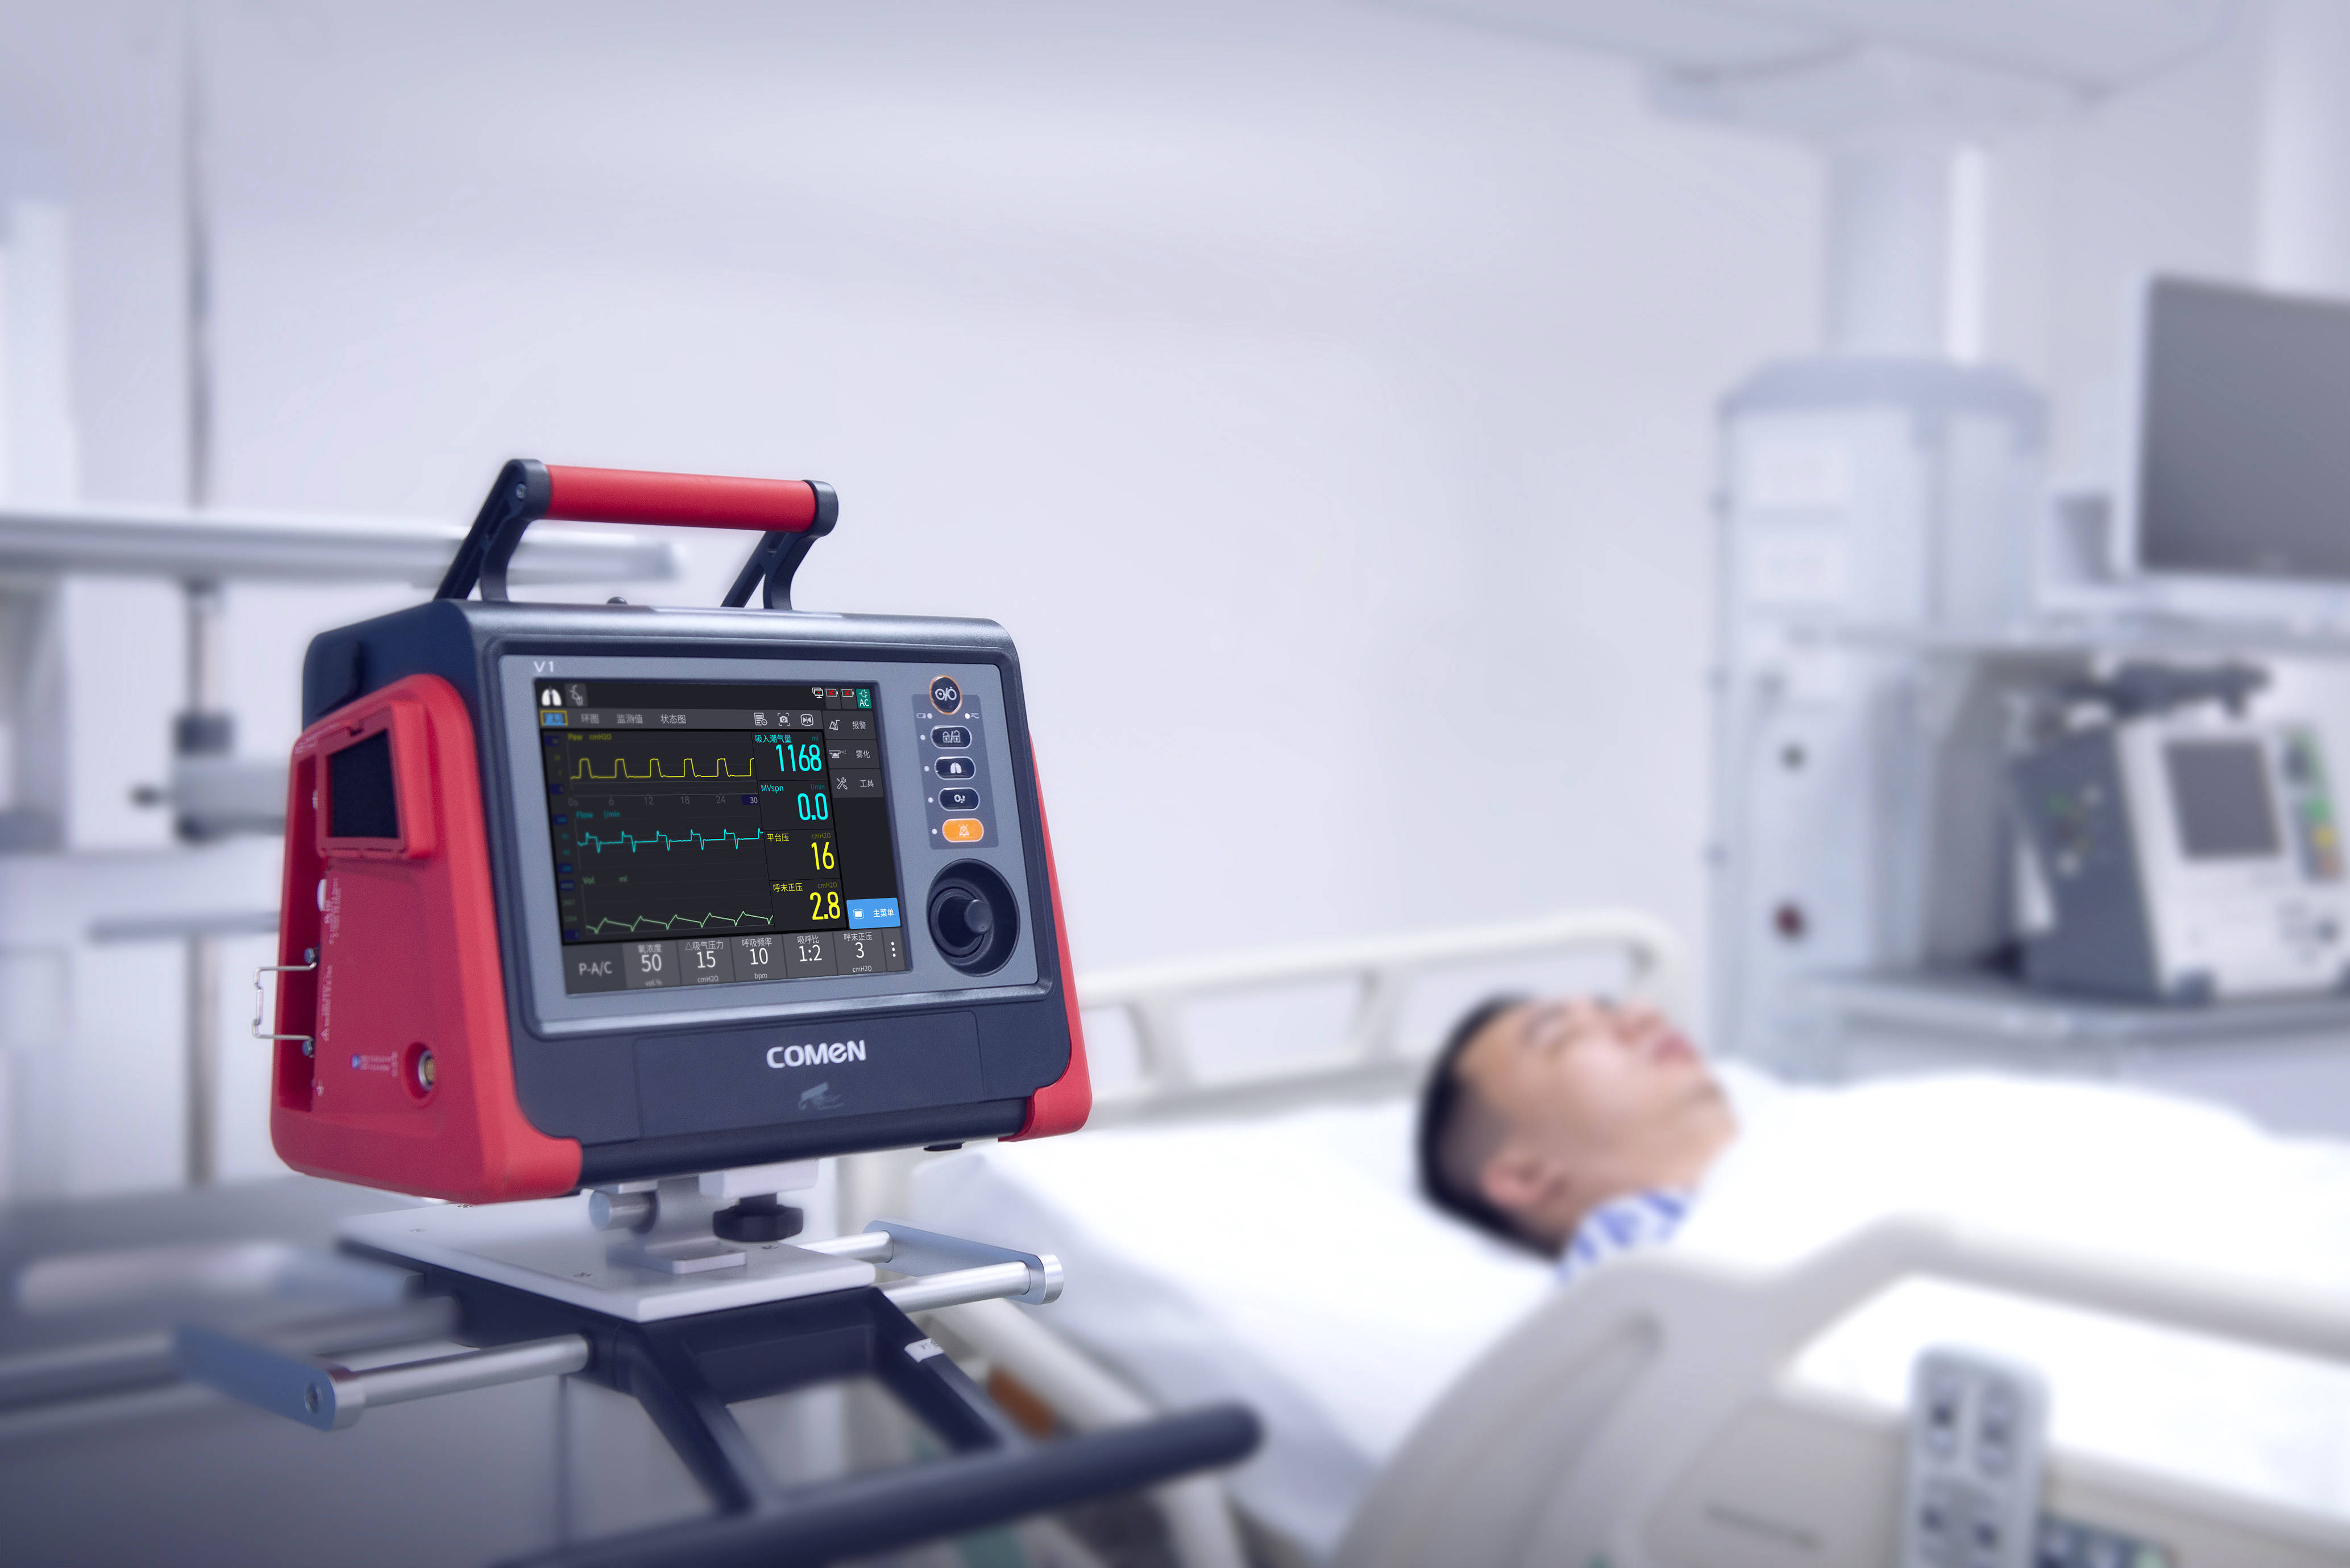 科曼在全球市场再获订单v1急救转运呼吸机受到国际认可